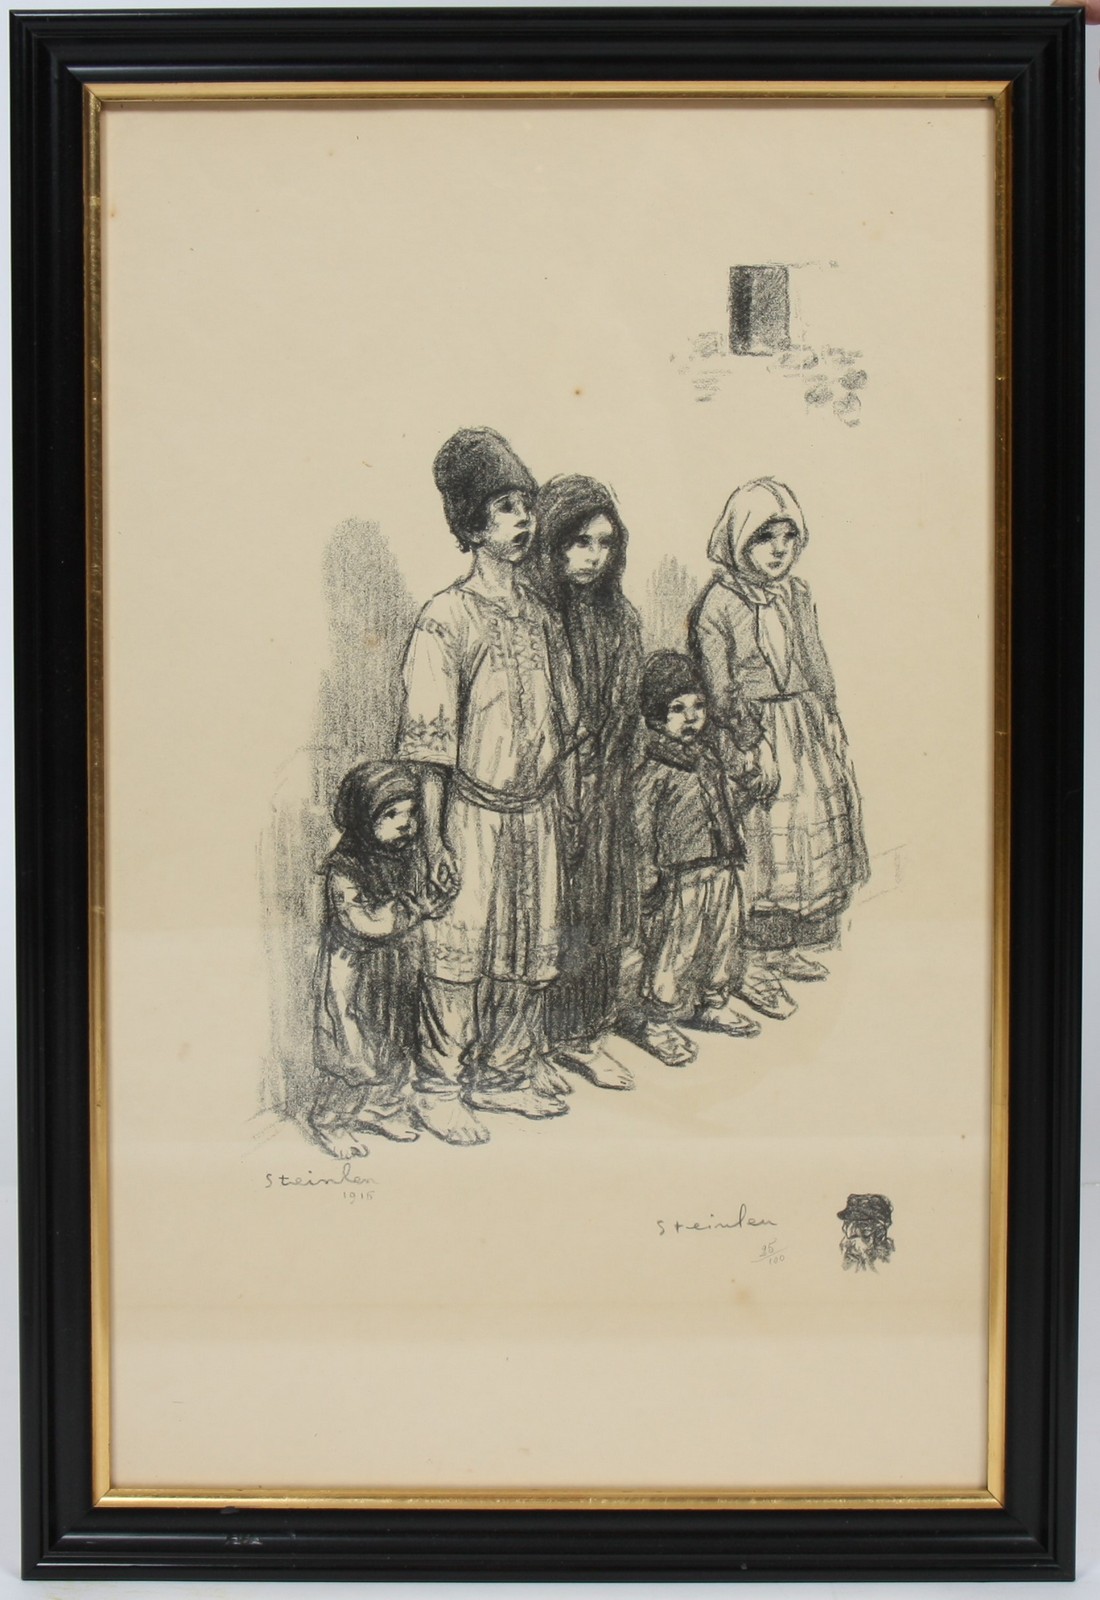 LITHOGRAPHIE DE STEINLEN
En noir et blanc, encadrée, représentant une mère et ses deux enfants